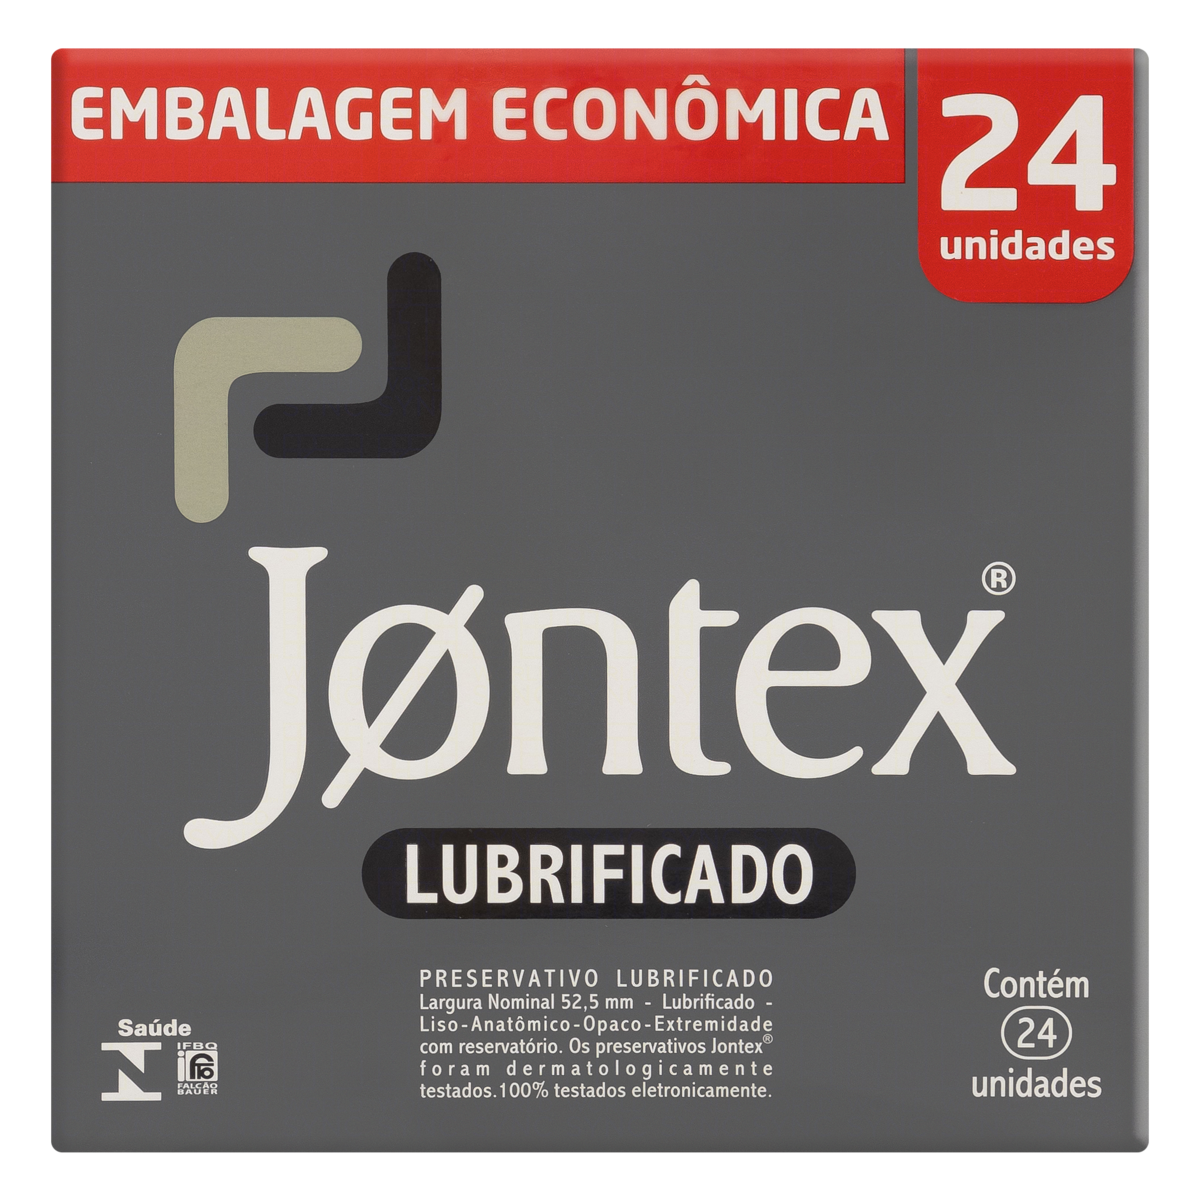 7896222720894 - PACK PRESERVATIVO MASCULINO LUBRIFICADO JONTEX CAIXA 24 UNIDADES EMBALAGEM ECONÔMICA